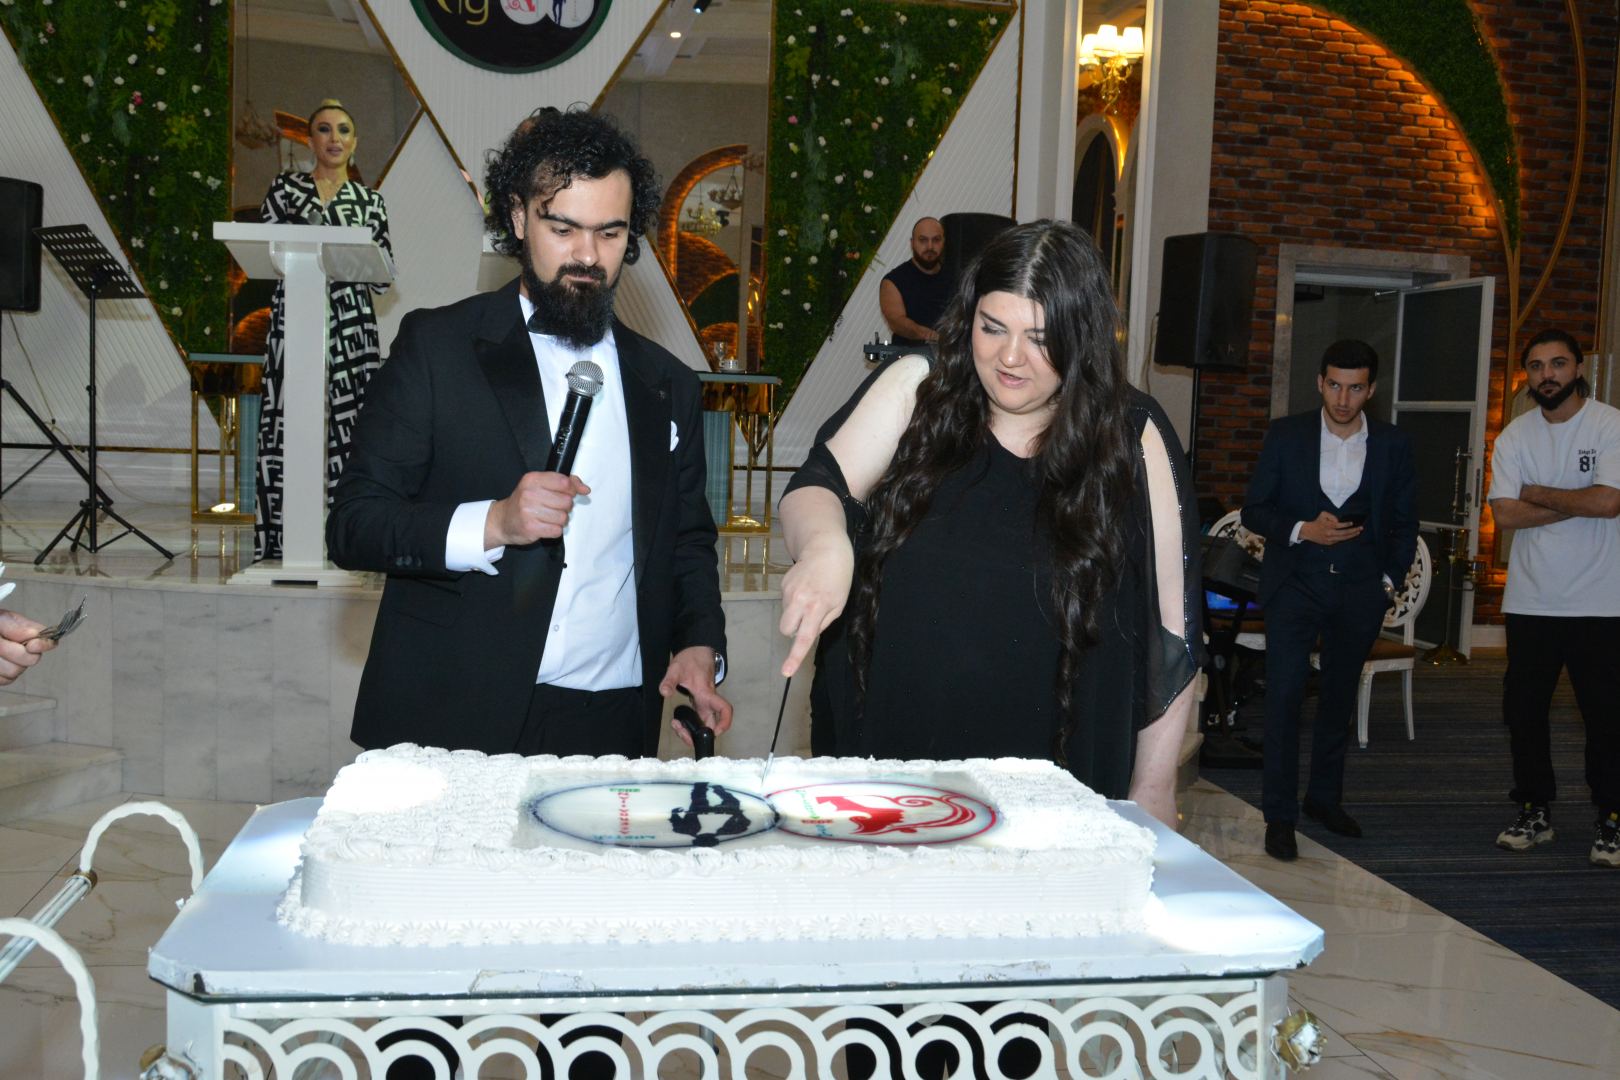 "Miss & Mister Azerbaijan 2023" Milli Gözəllik müsabiqəsinin finalı keçirilib (FOTO)